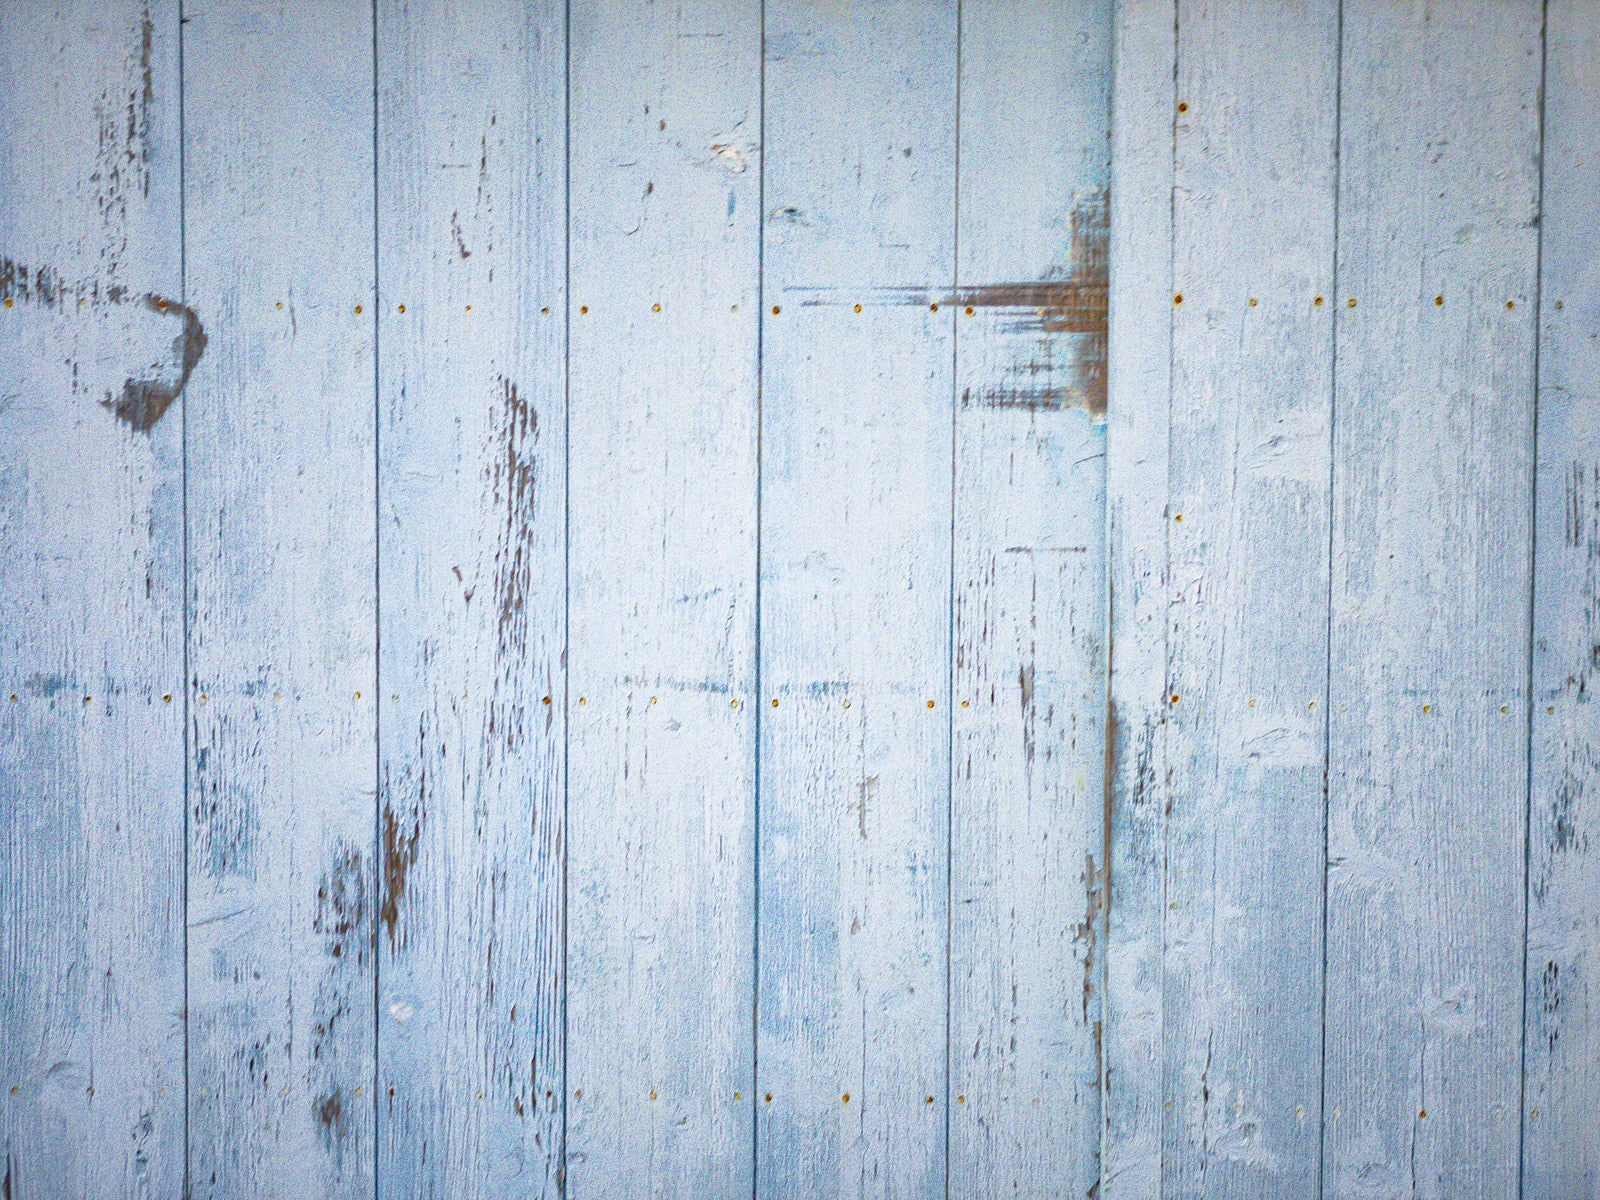 「塗装剥がれのある板壁と錆びたビスのテクスチャー」の写真